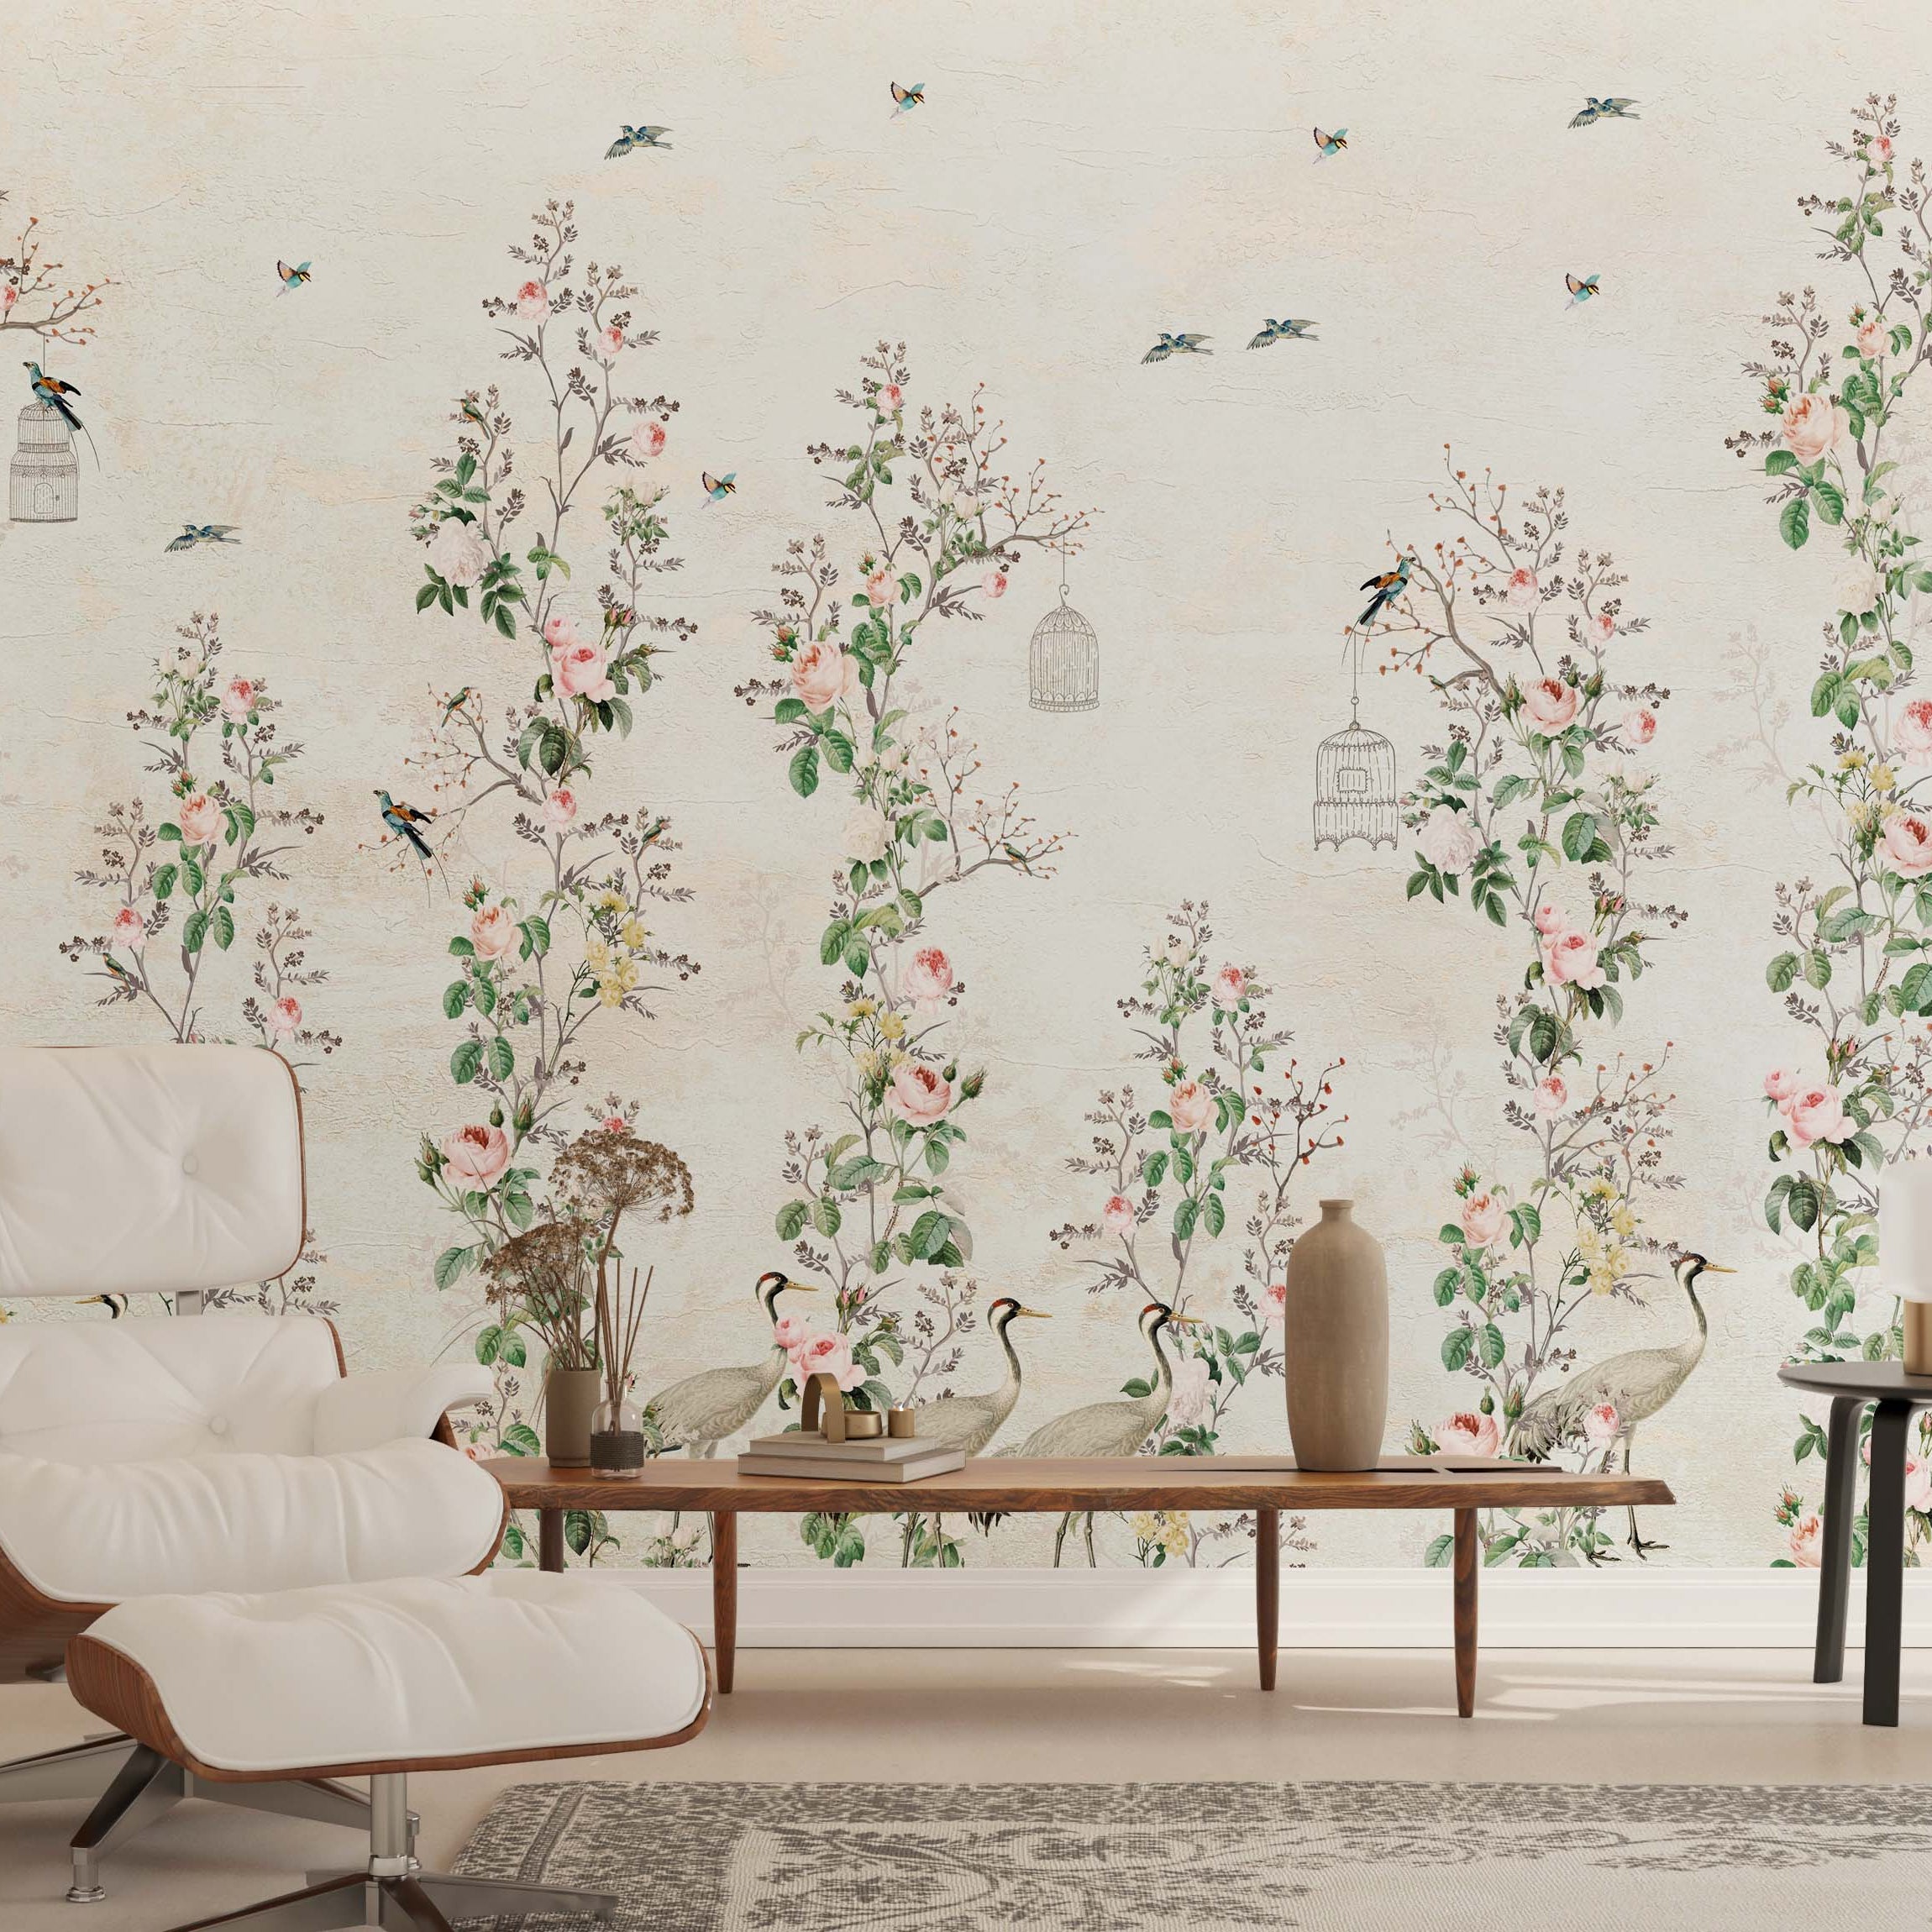 Floral Birds Wallpaper Mural: Stunning Wall Décor